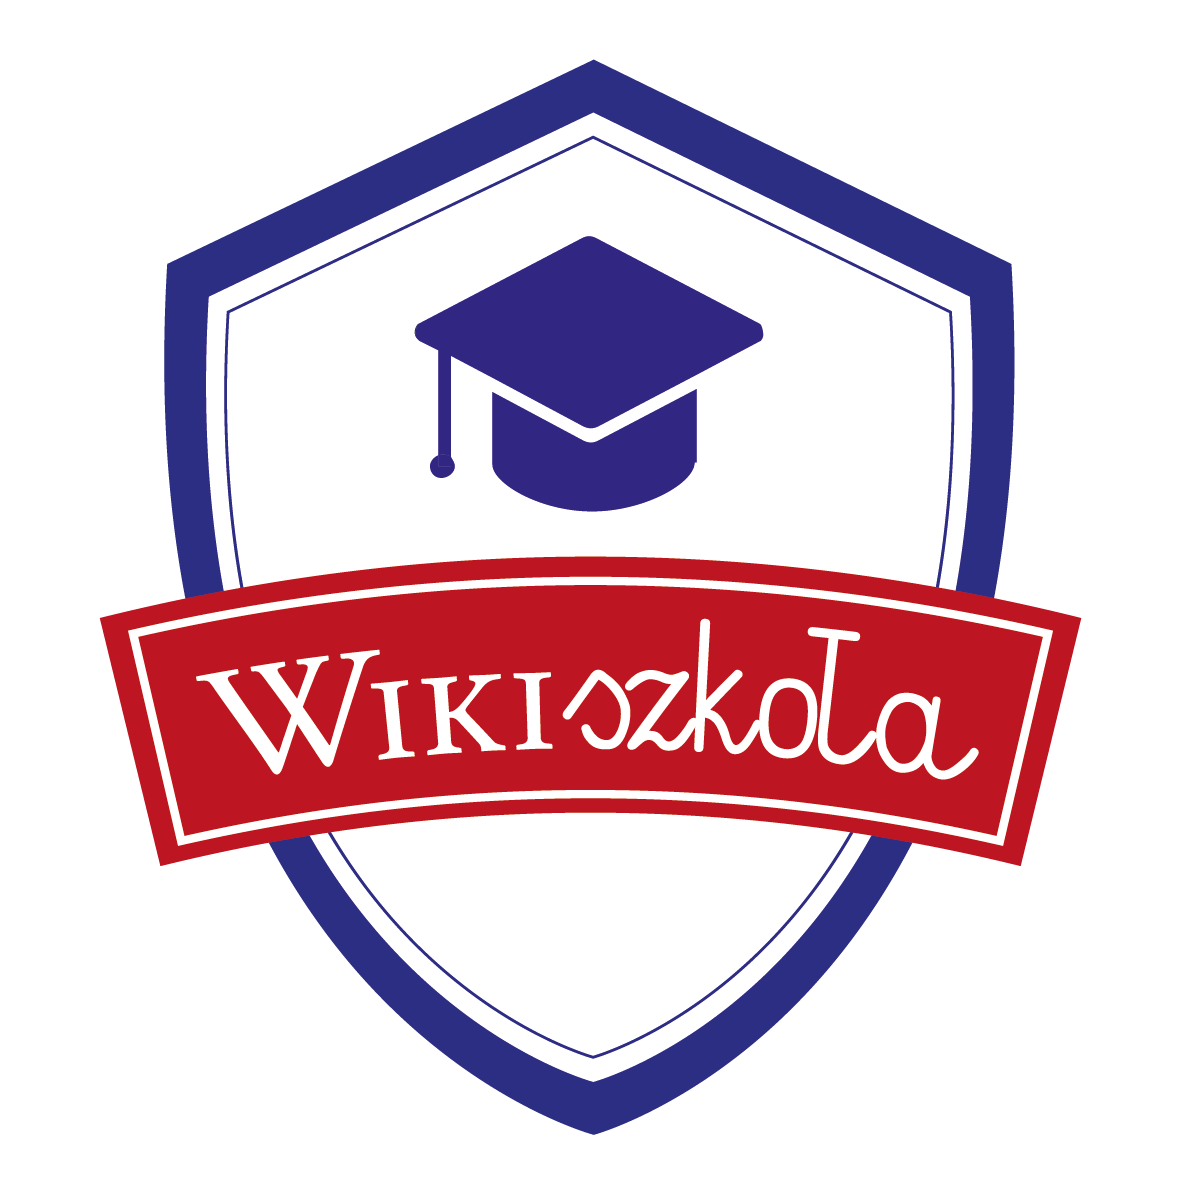 Wikiszkoła - Uniwersytety Edycja I WMPL001